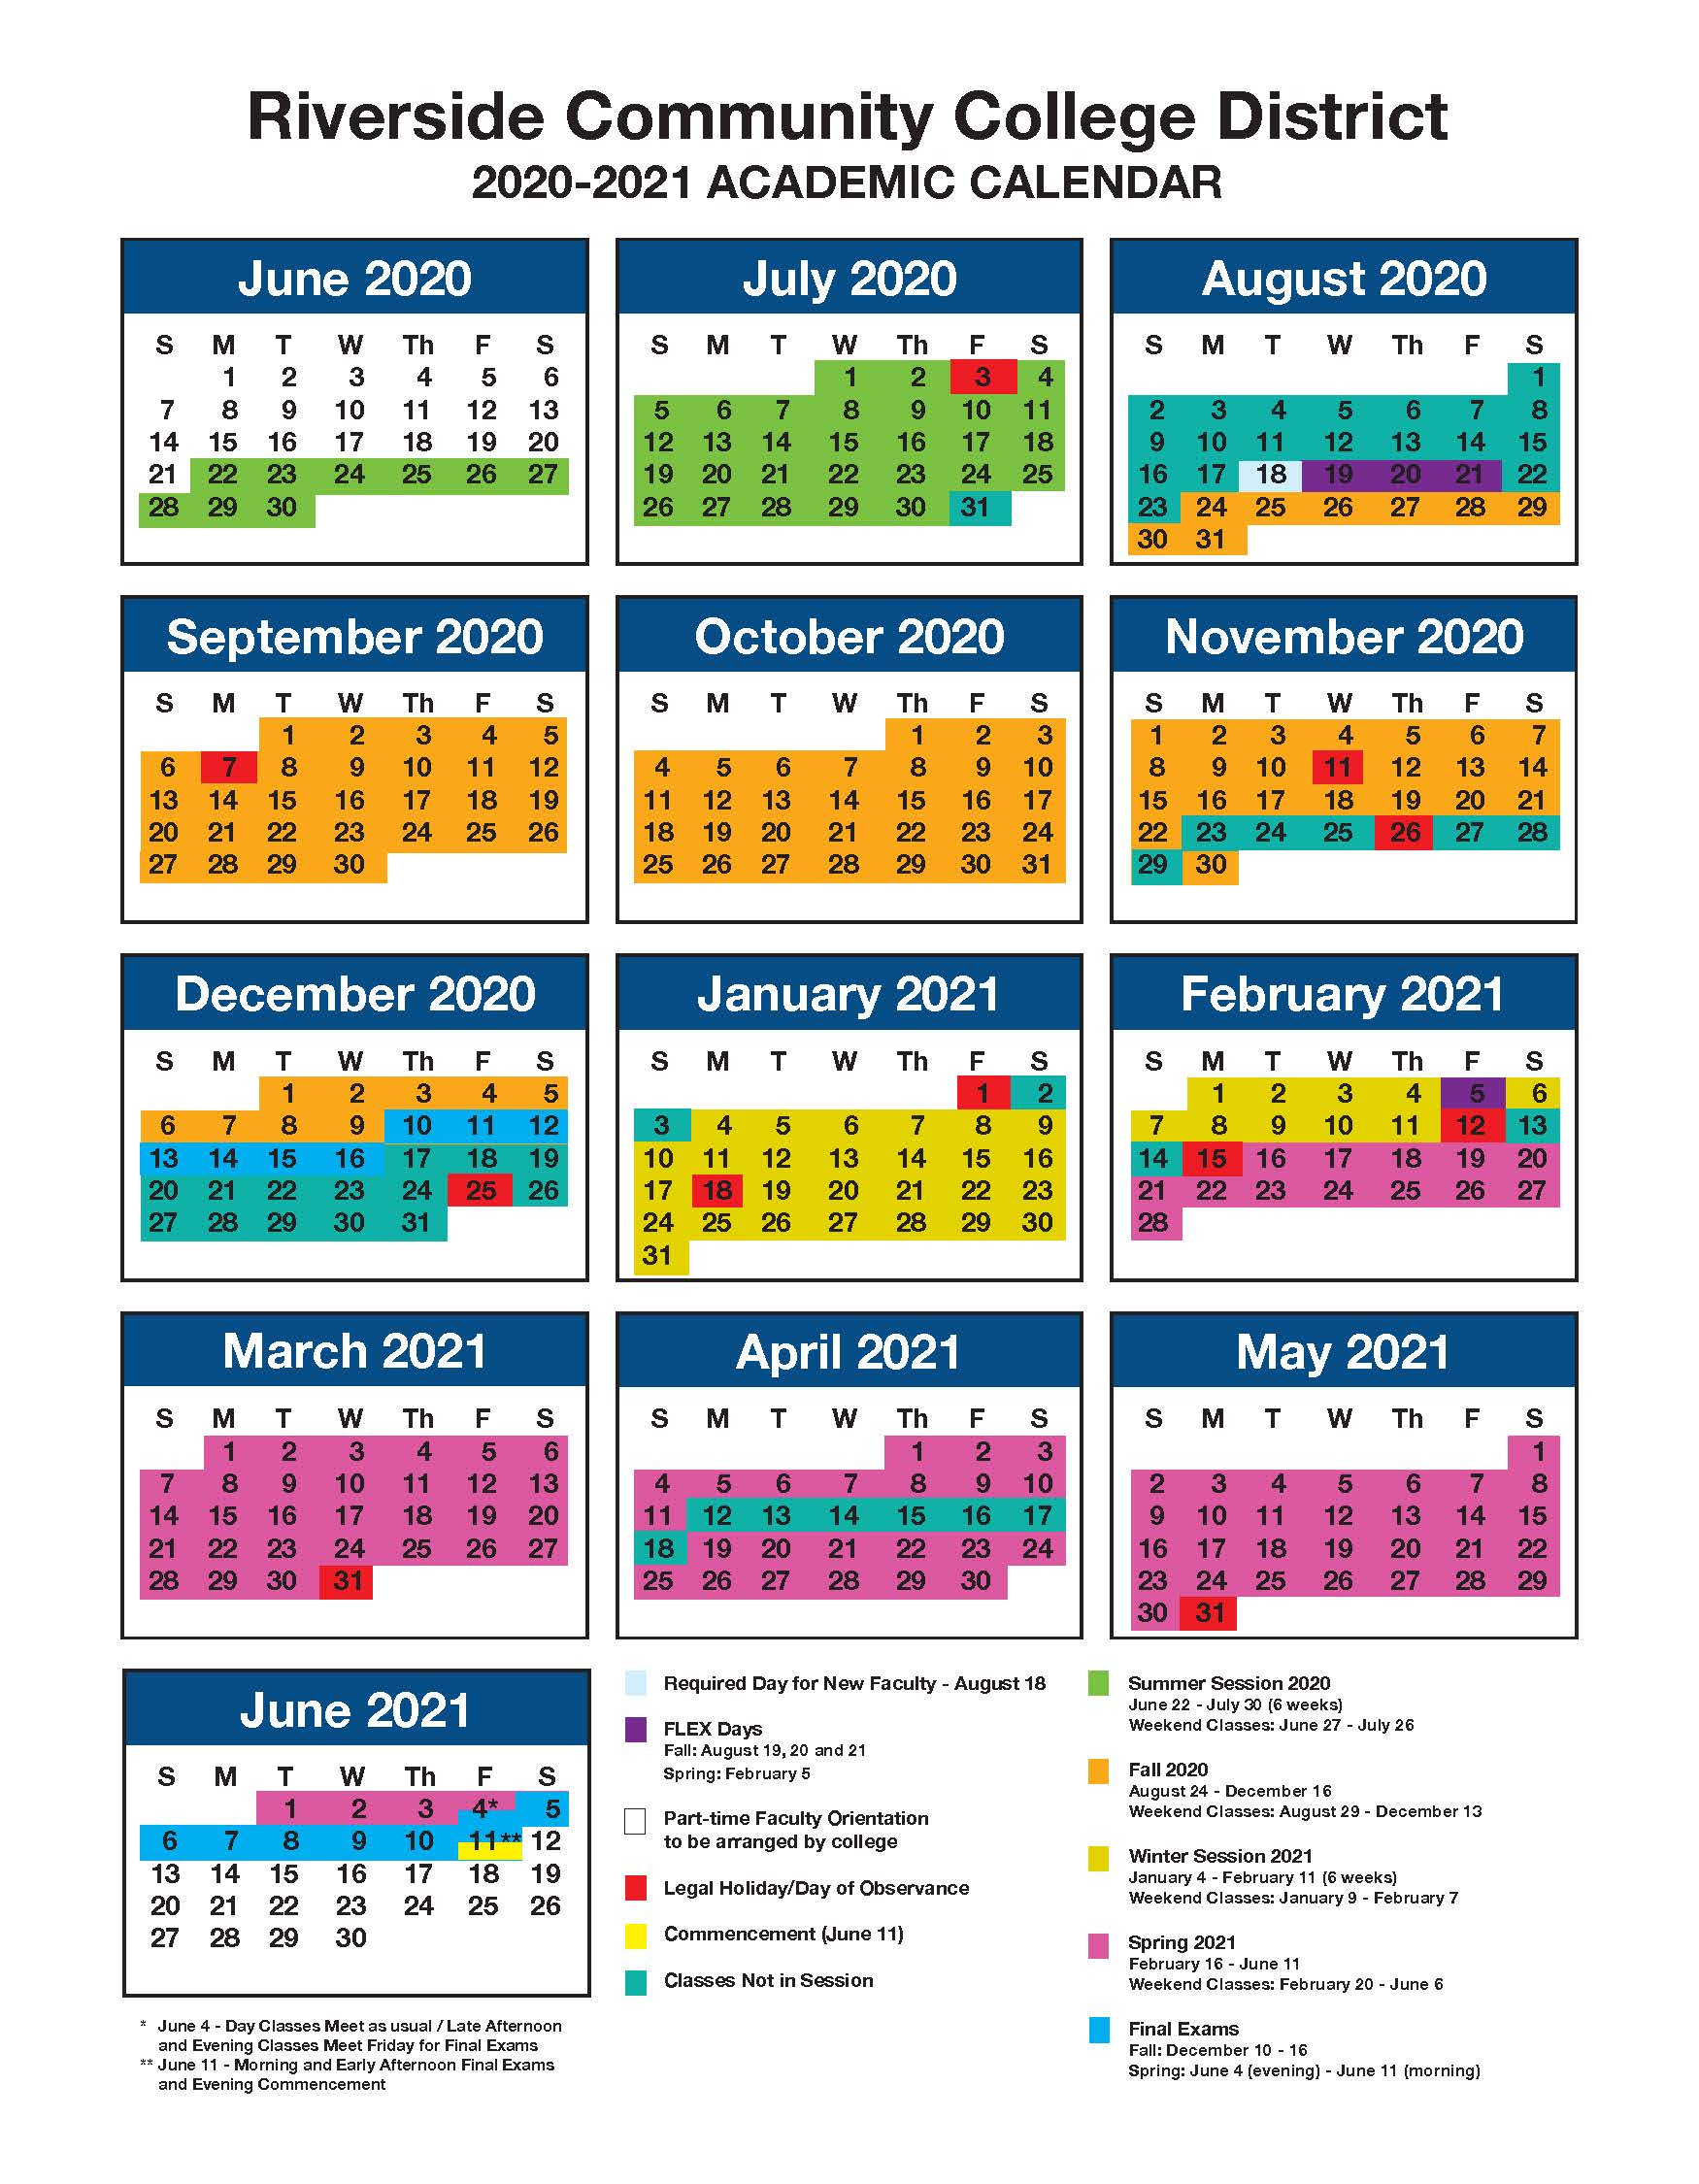 Catch Show Me A Calendar For June 2022